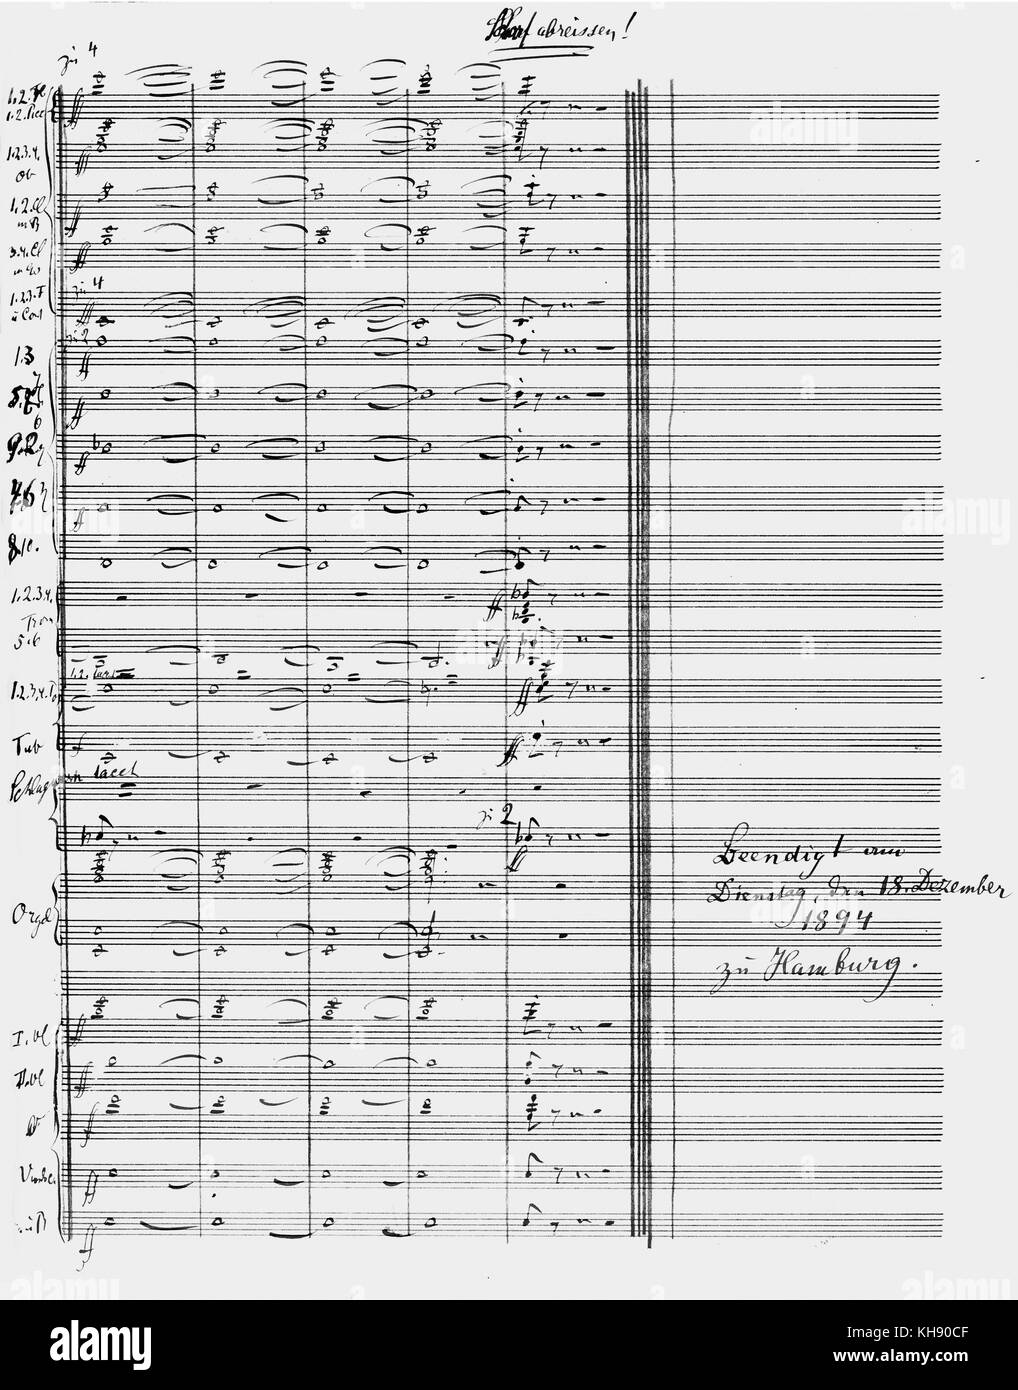 Gustav Mahler, la Resurrección - página final del 5º movimiento de la 2ª sinfonía. Partitura firmada y fechada por el compositor el 18 de diciembre de 1894, en Hamburgo. GM: compositor austríaco, el 7 de julio de 1860 - 18 de mayo de 1911 Foto de stock